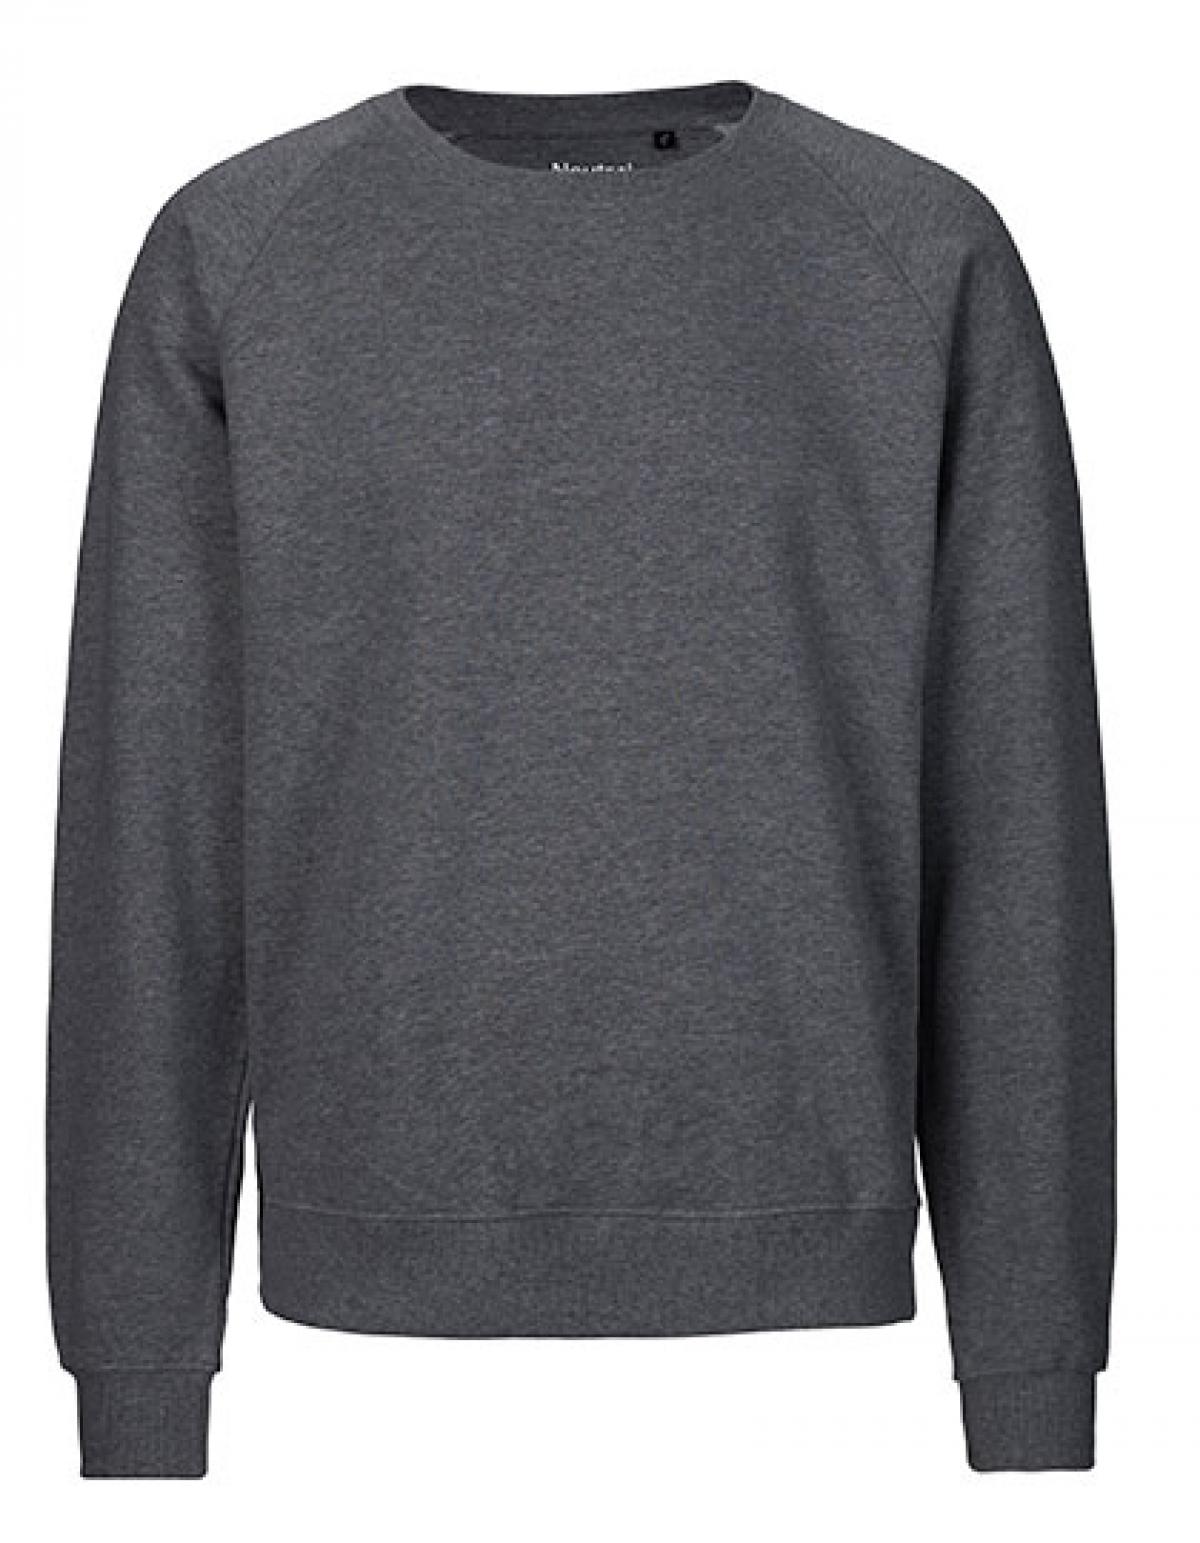 Sweatshirt Sweater Pullover schwarz Größe XS S go green fruit Restposten 